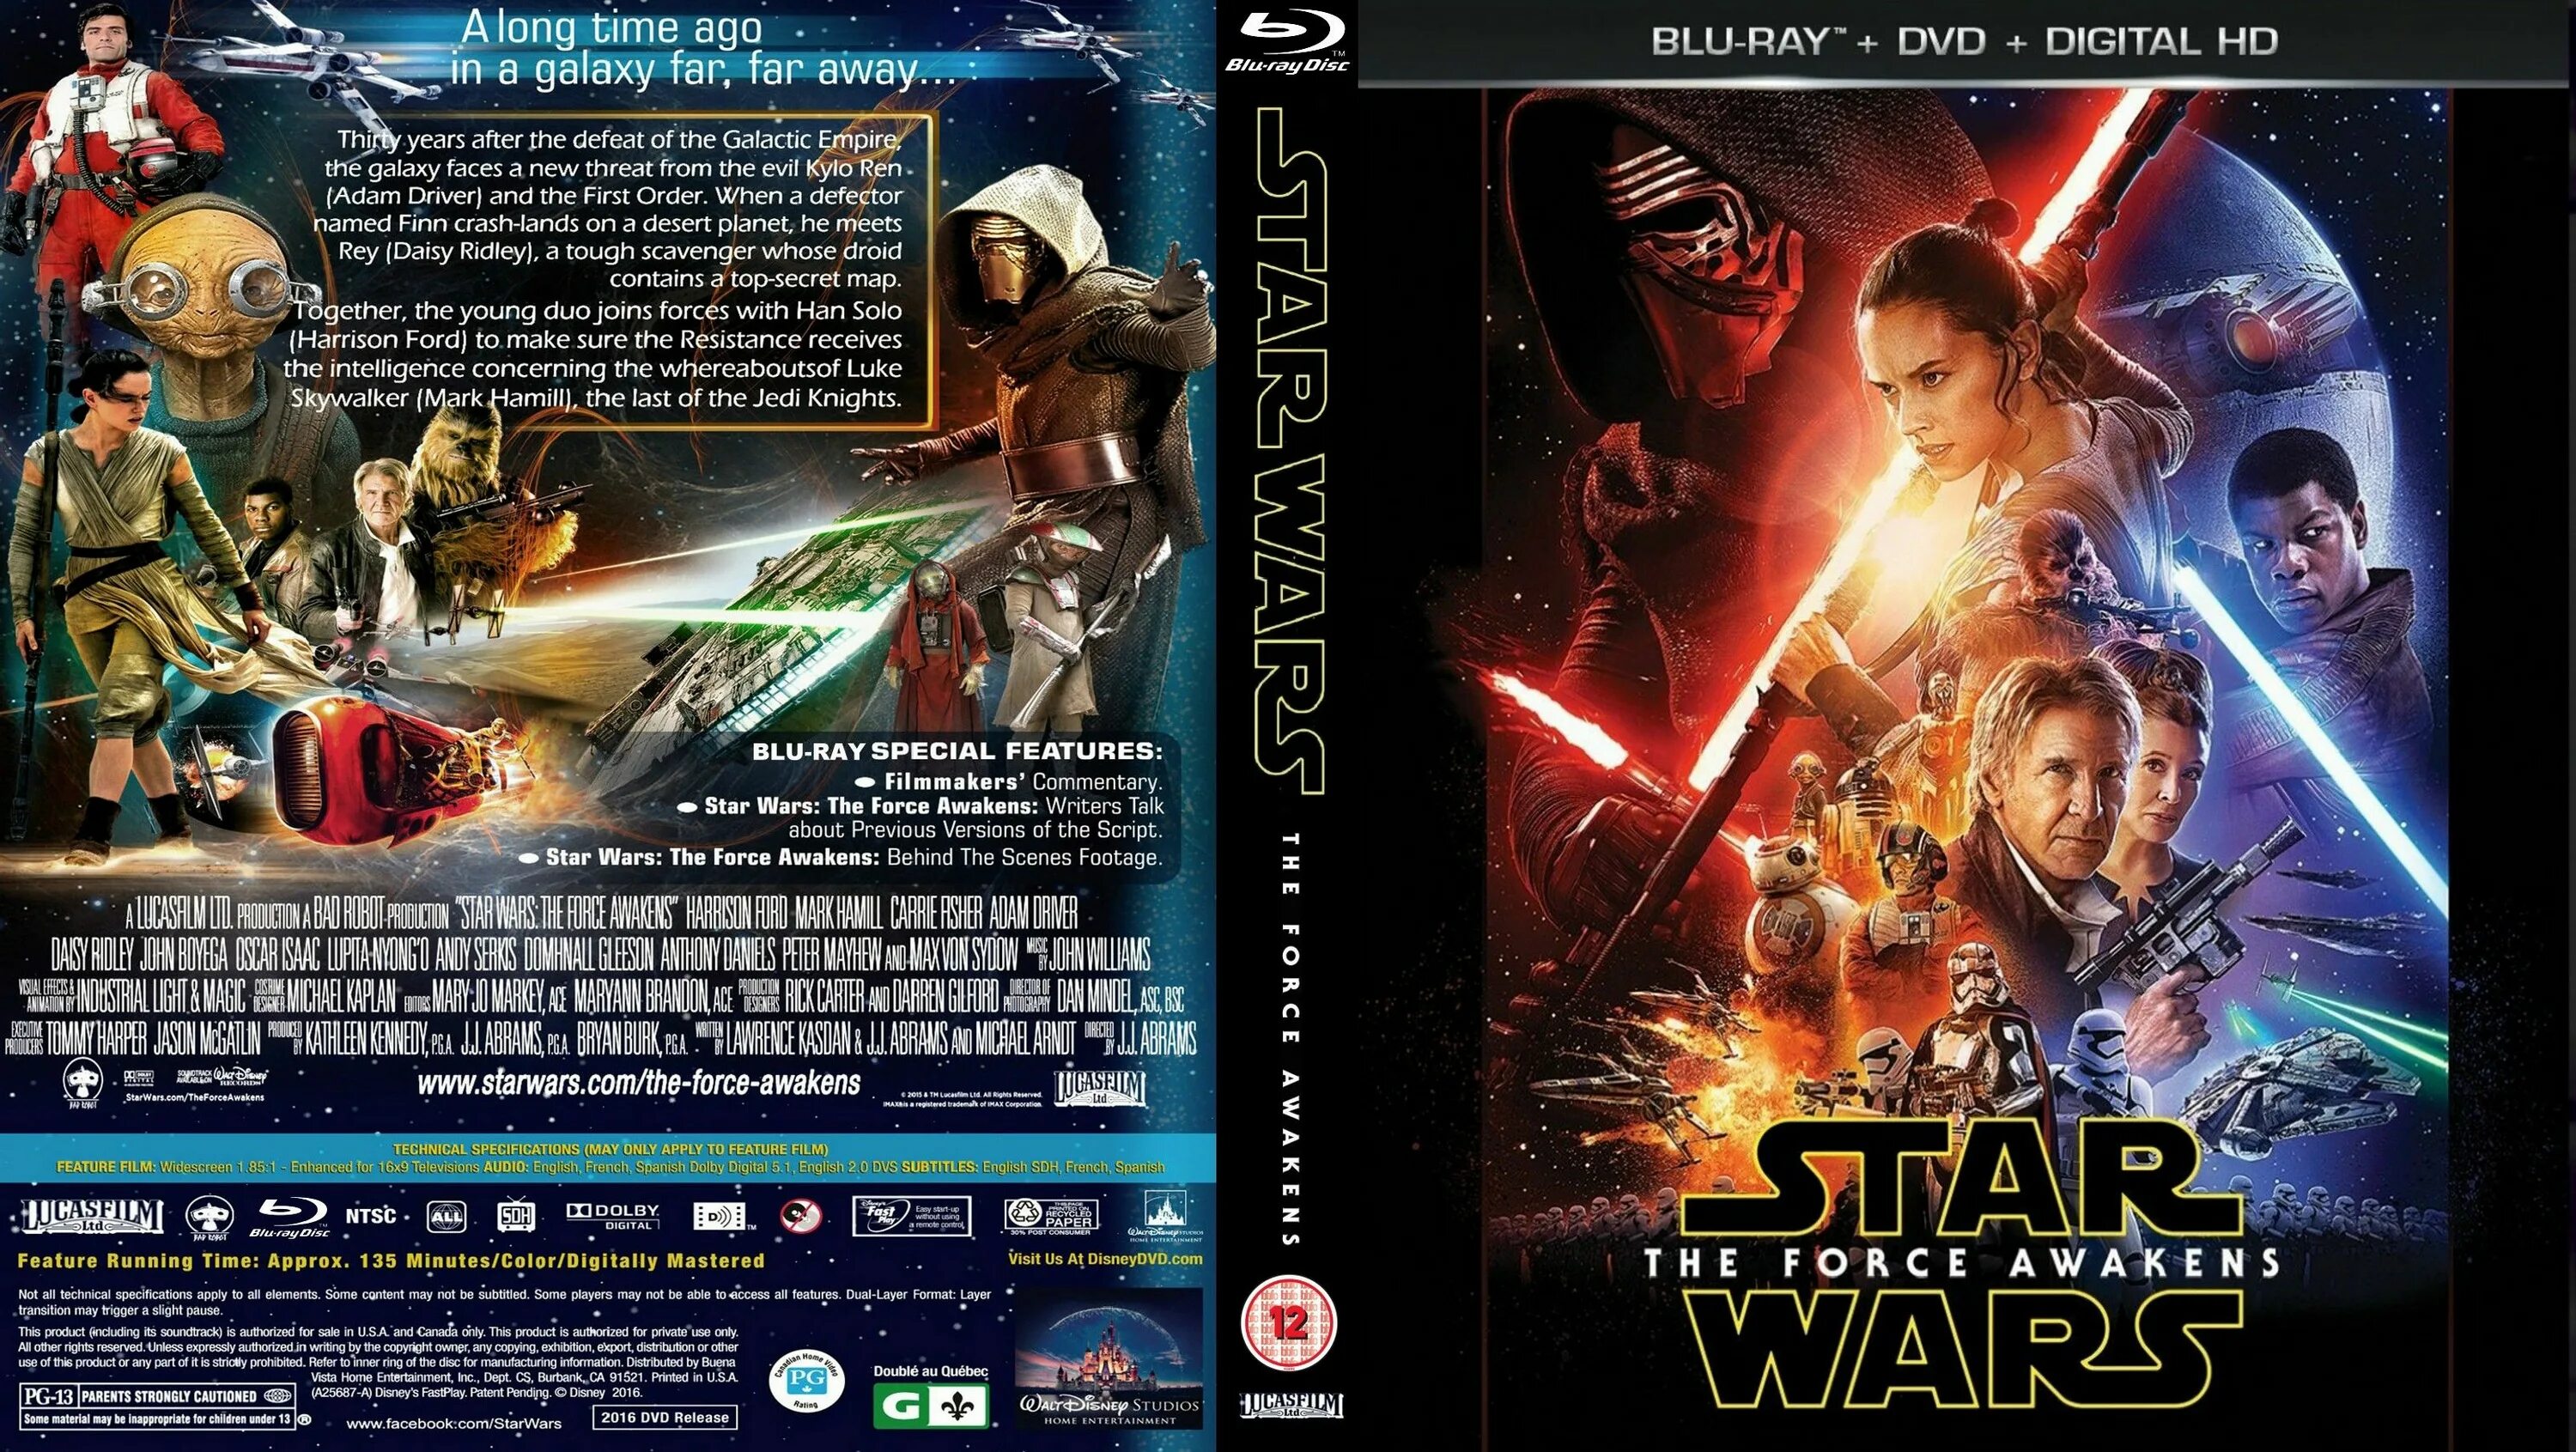 Star Wars Episode 3 Blu-ray обложка. Звёздные войны обложка для двд. Звездные войны. Эпизод 1 Blu ray Cover. Star Wars the Force Awakens обложка. Пробуждение на английском